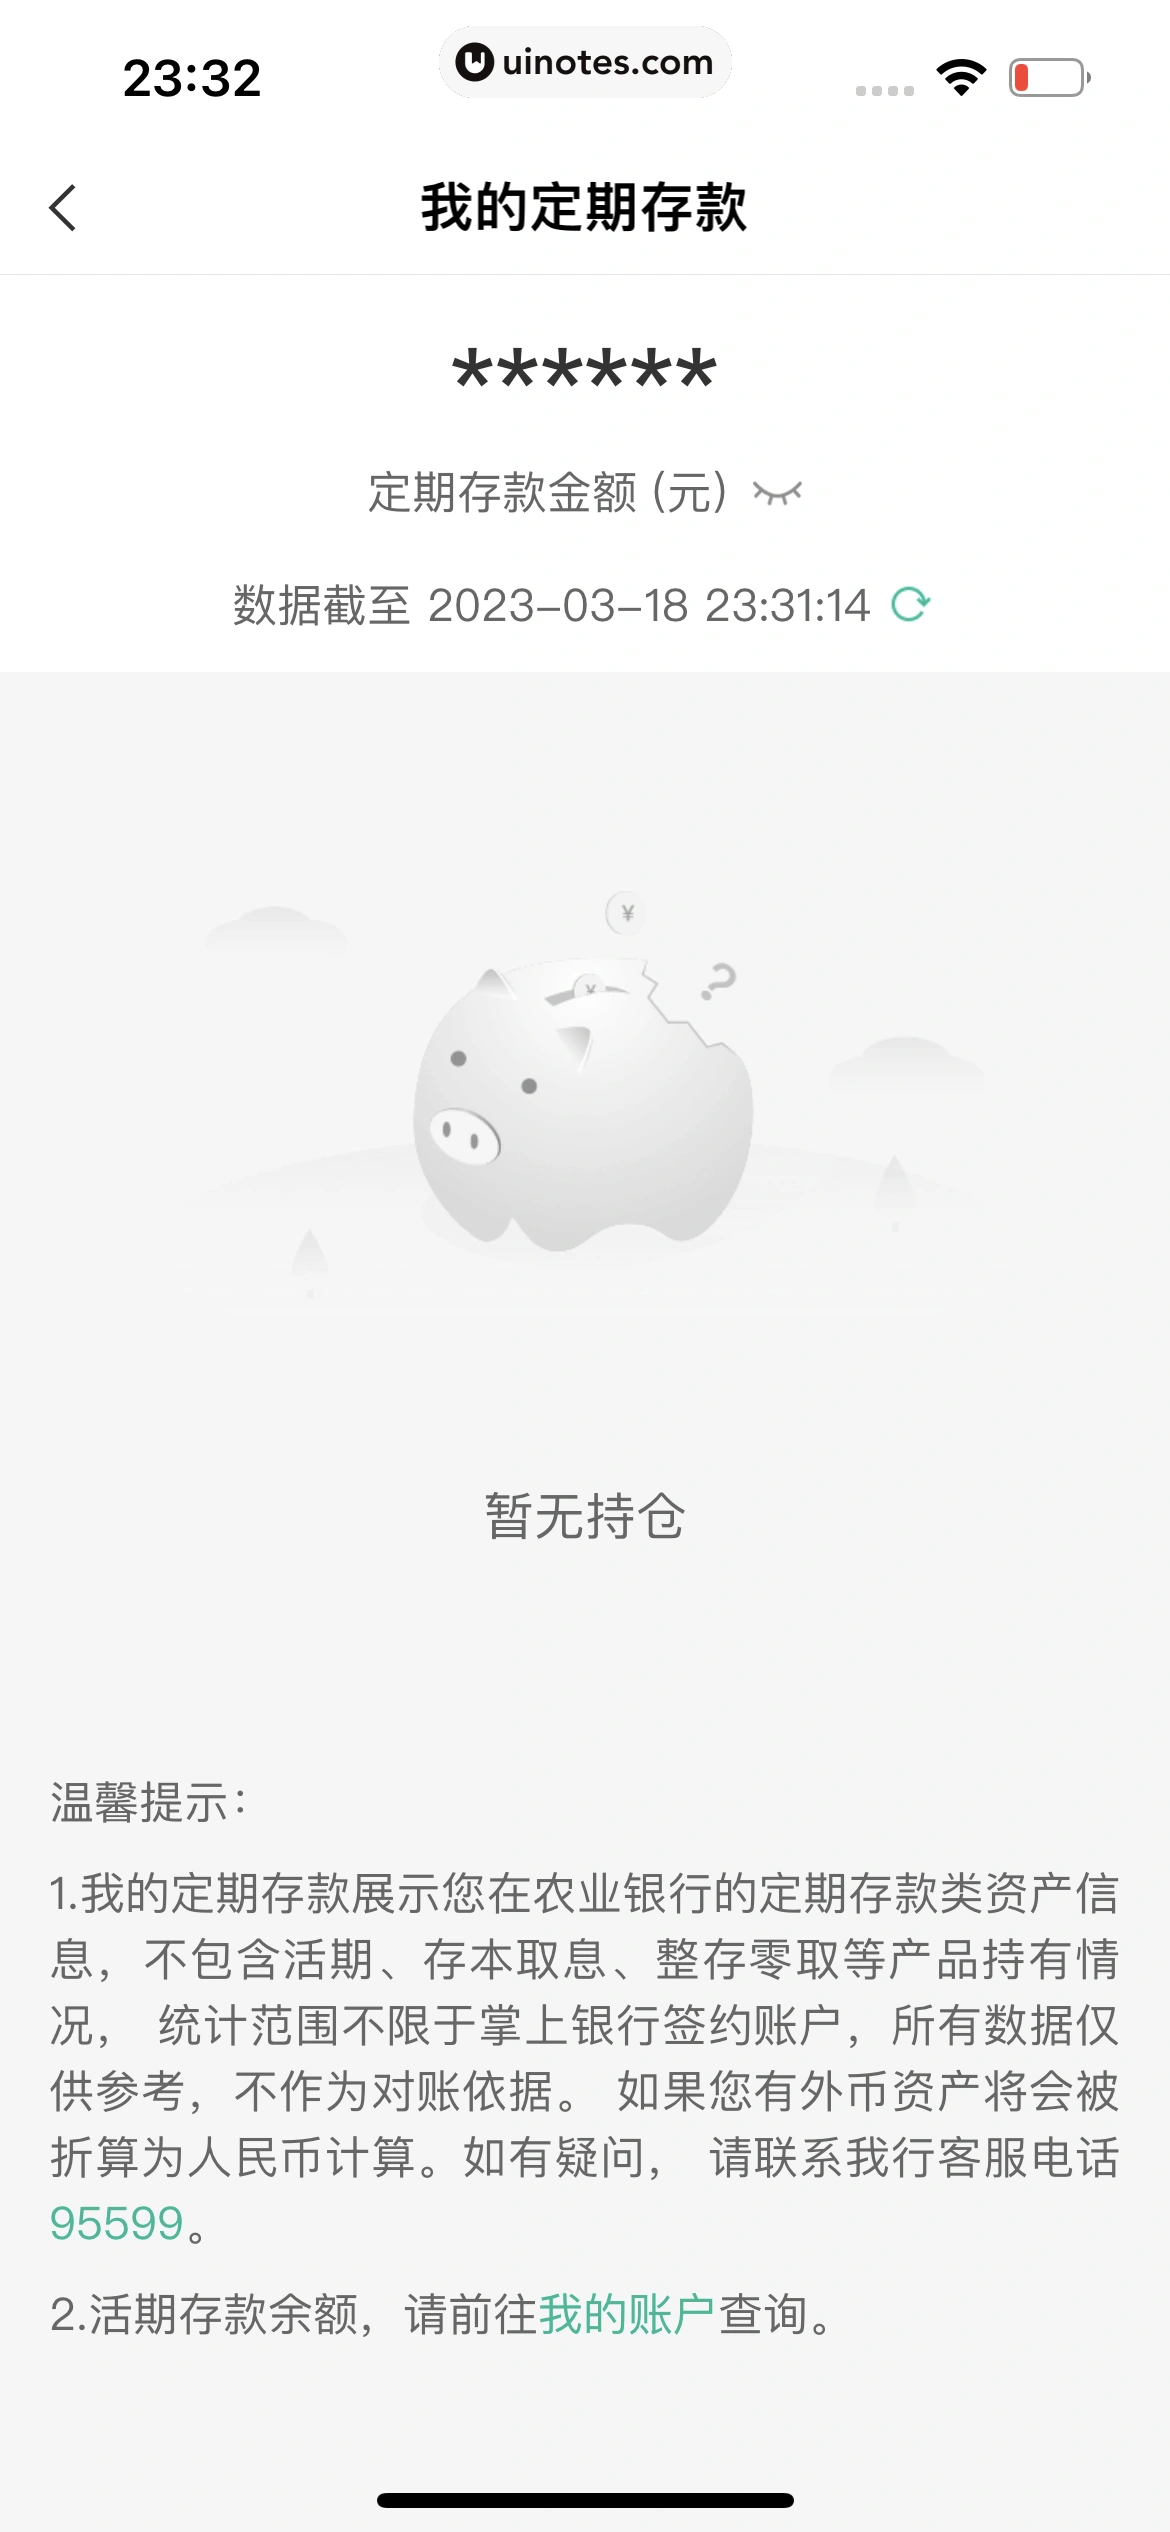 中国农业银行 App 截图 071 - UI Notes